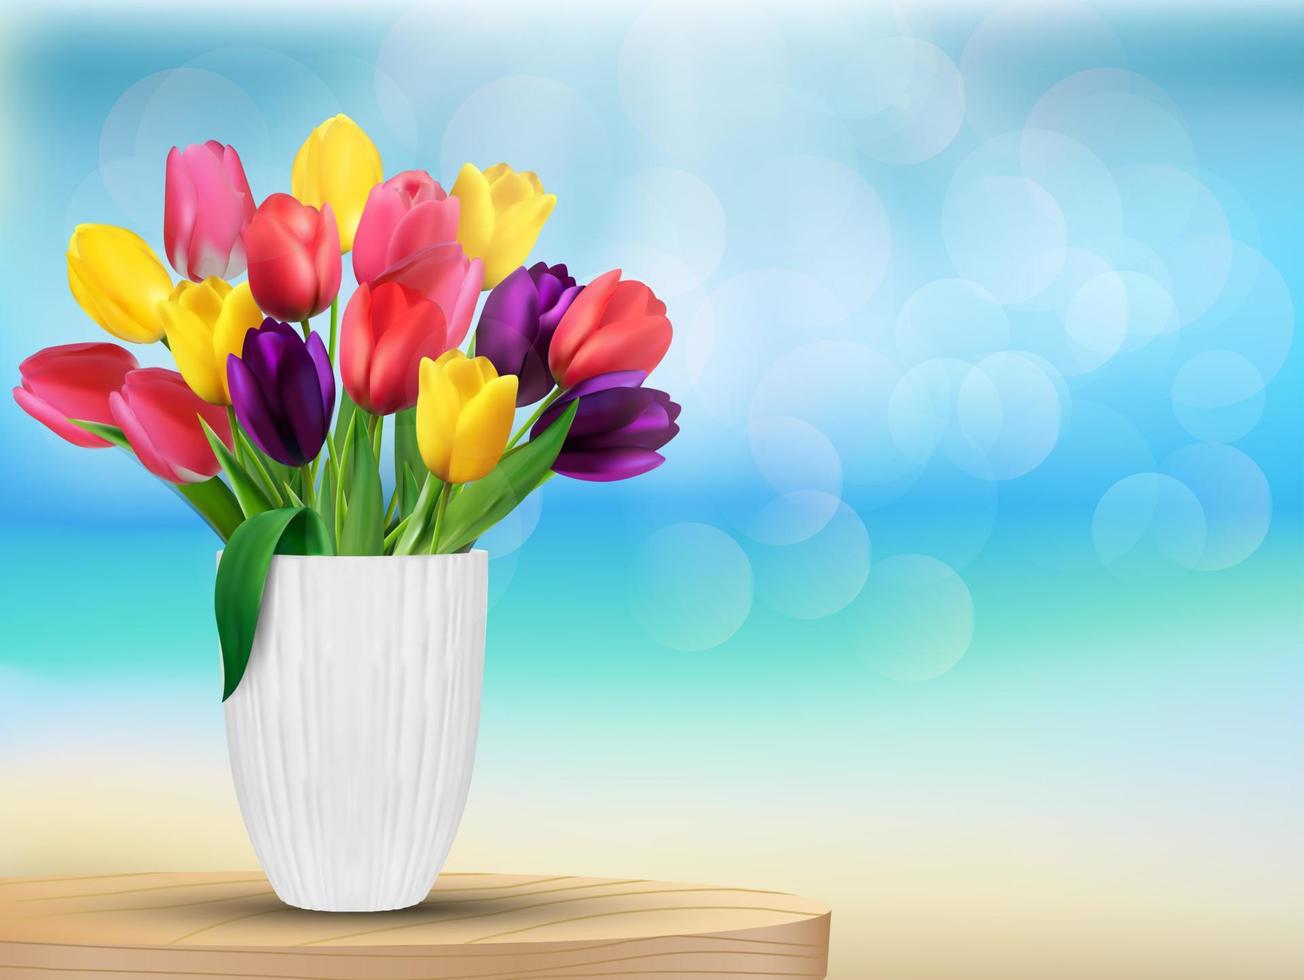 fiori di tulipano nei colori dell'arcobaleno in un bicchiere bianco sulla spiaggia vettore